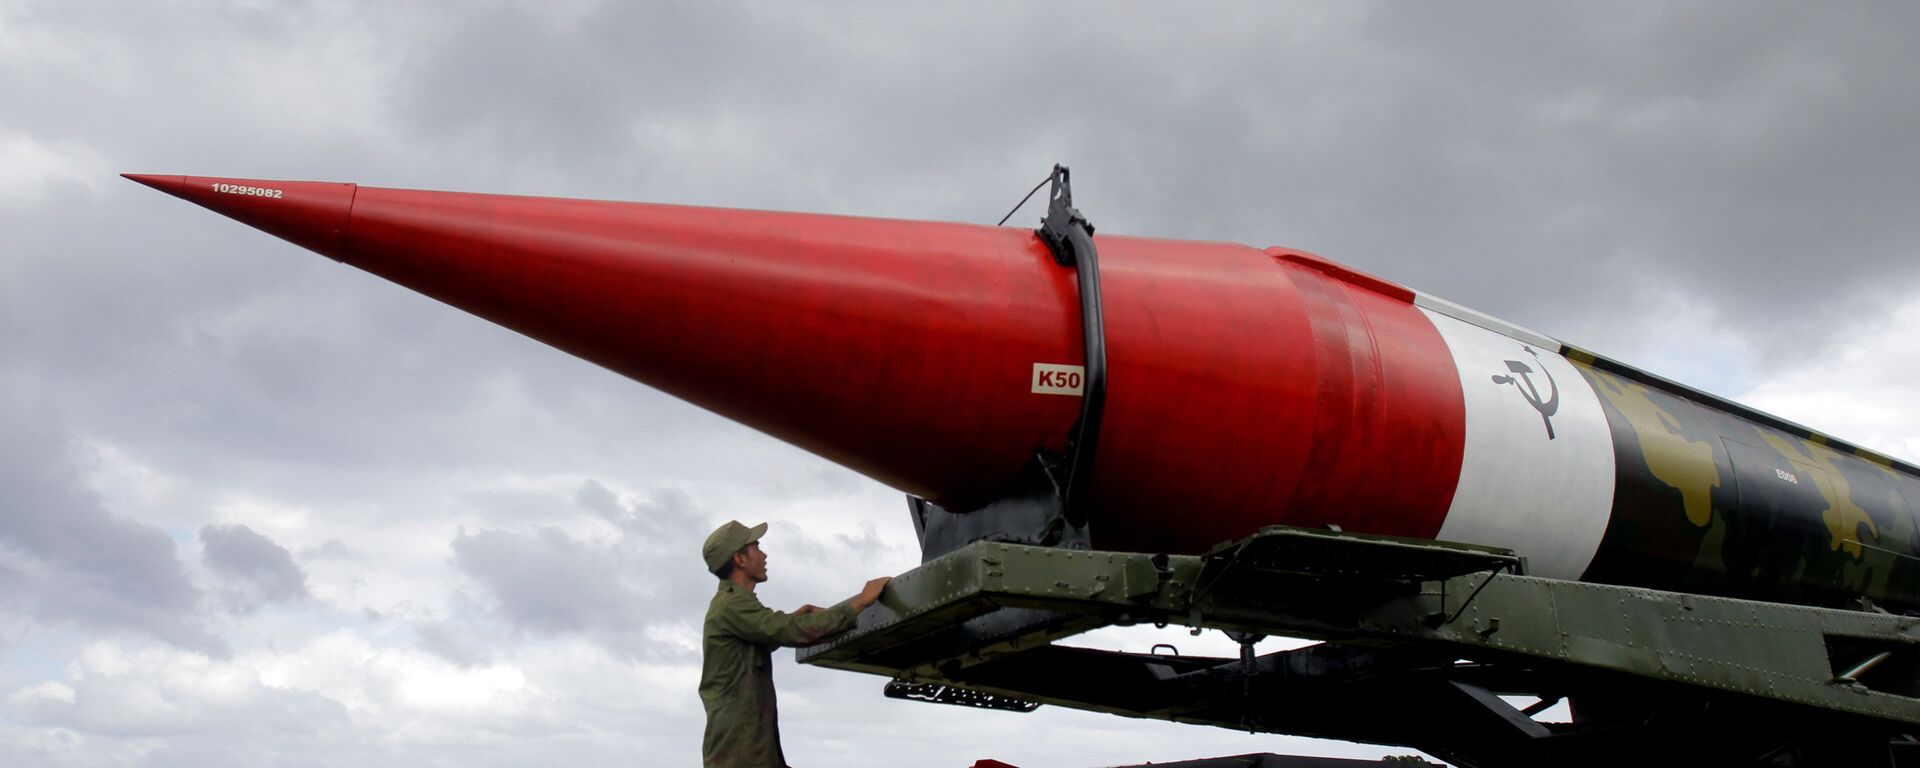 Misil soviético vacío de los tiempos de la crisis de los misiles del Caribe, expuesto en el complejo militar Morro Cabana en La Habana, Cuba (archivo) - Sputnik Mundo, 1920, 15.10.2022